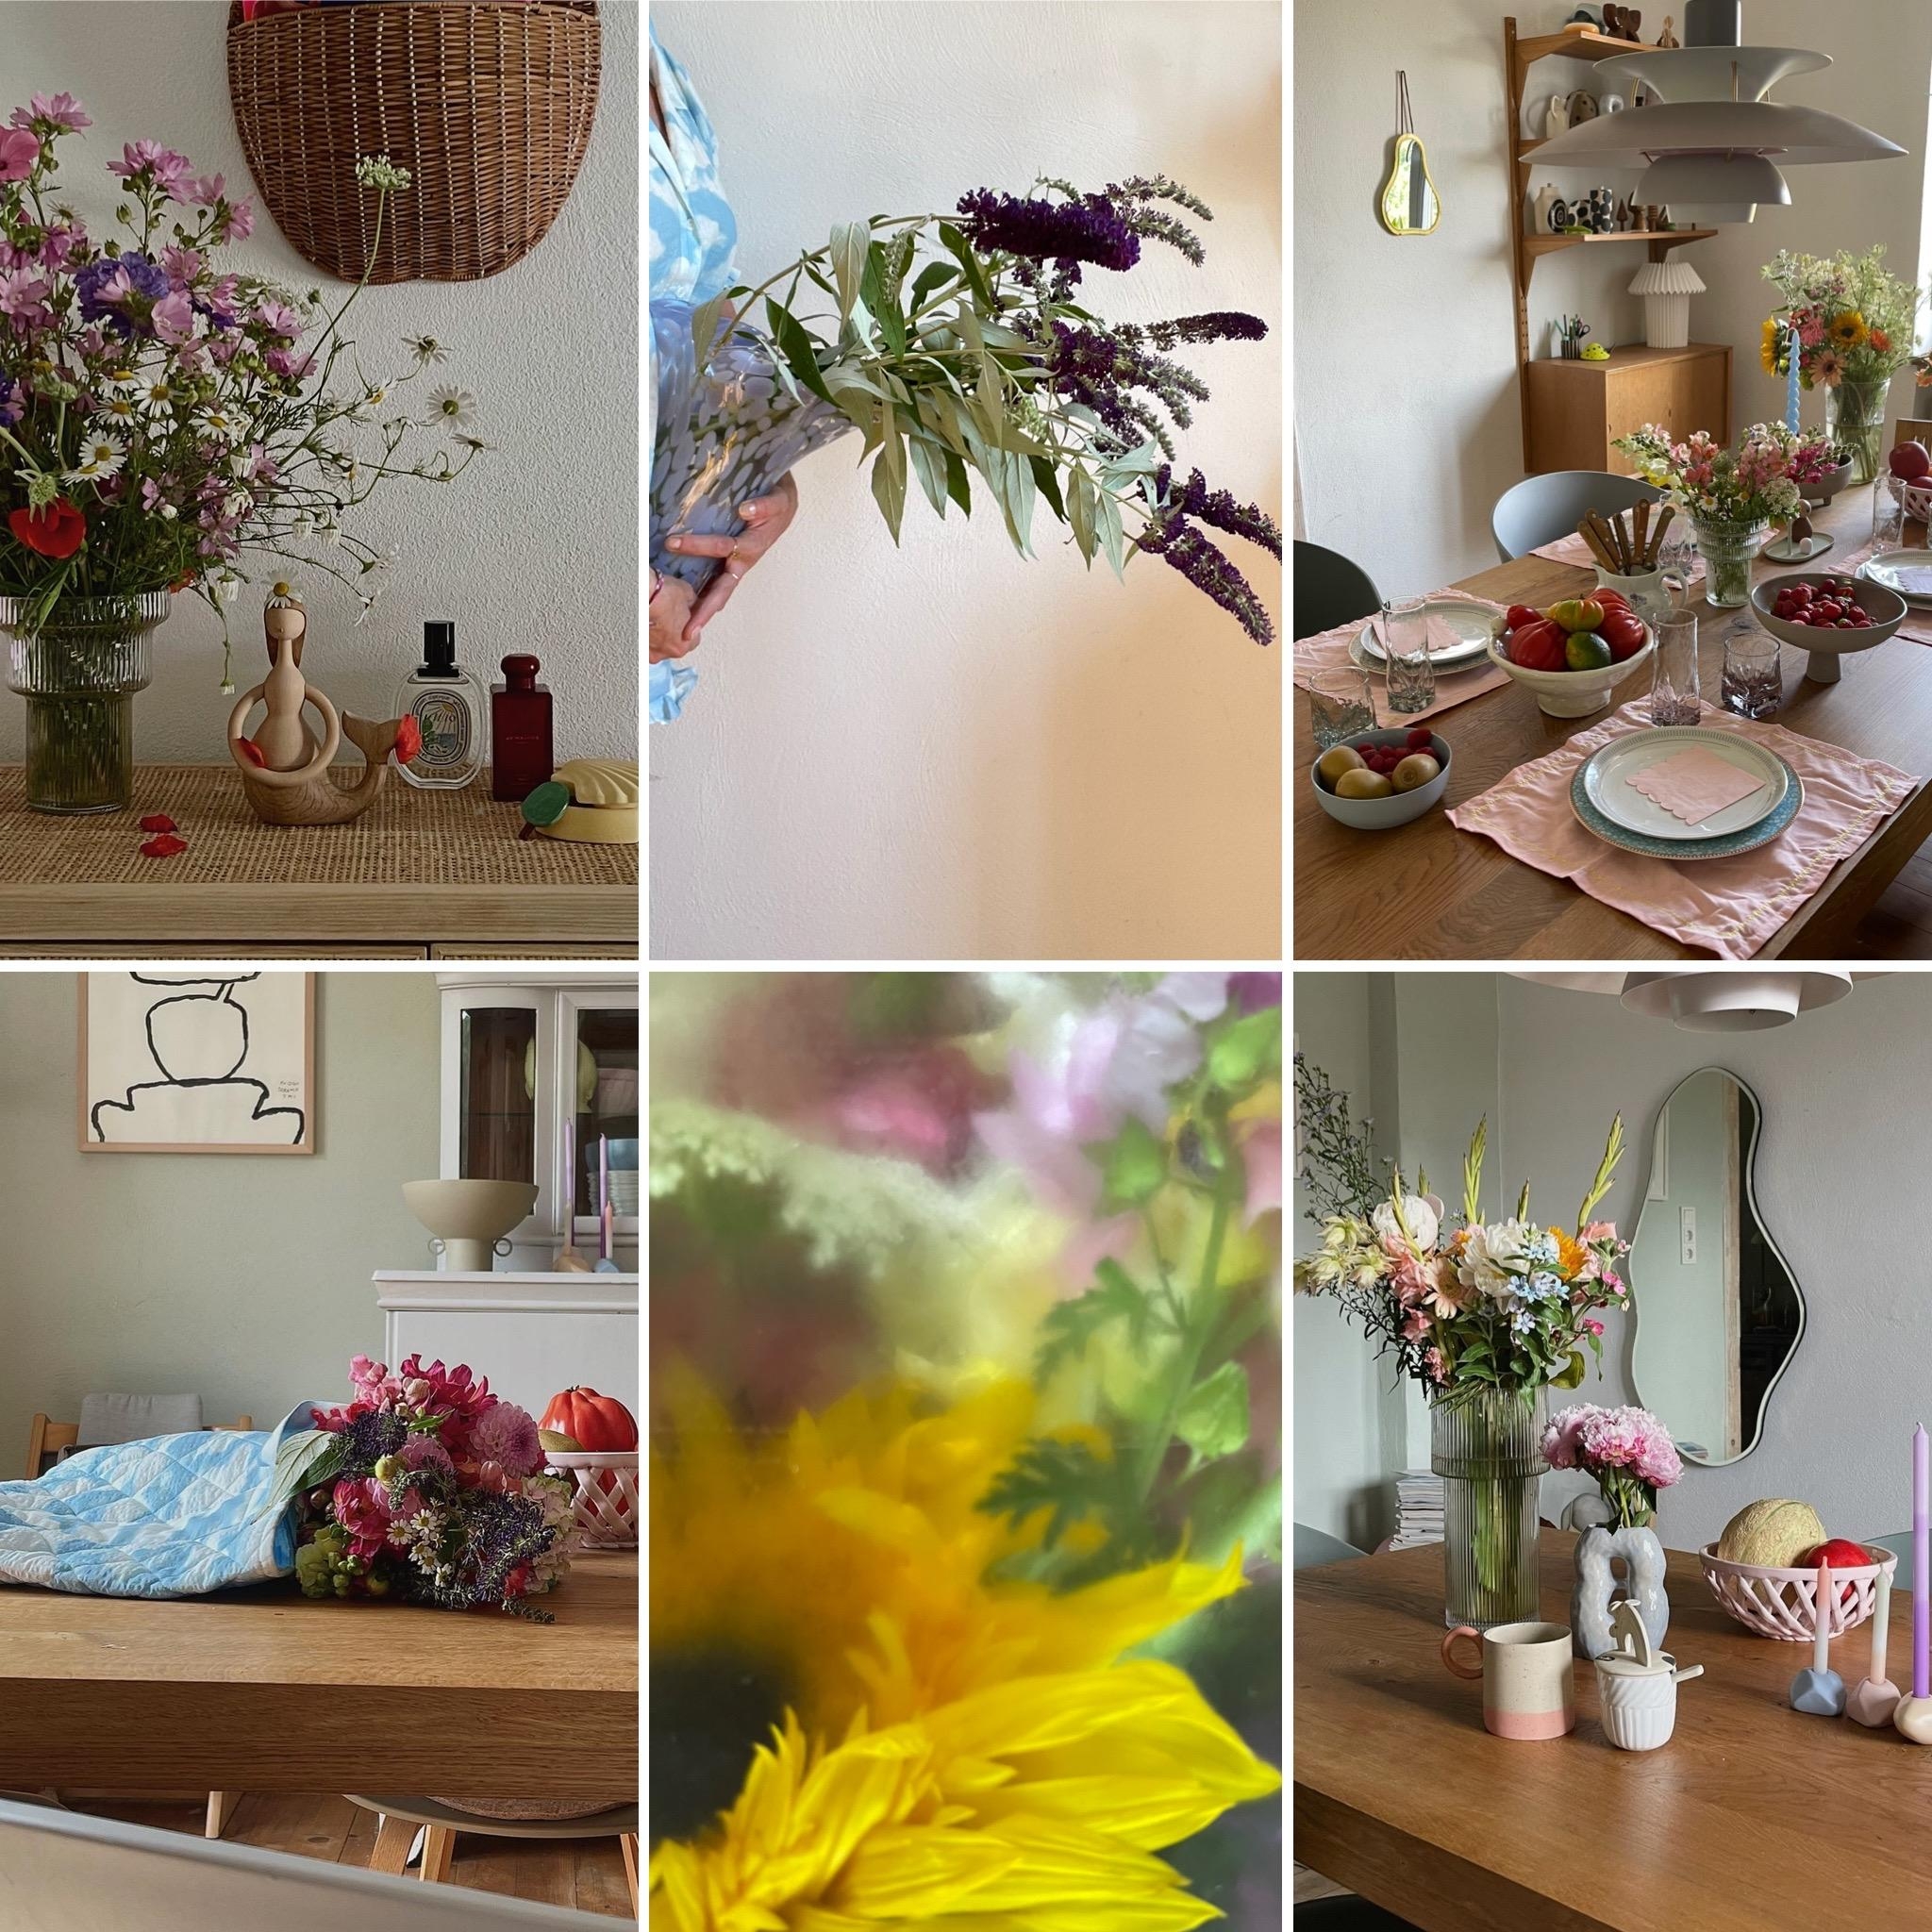 #juli#rückblick#collage#spring#home#interior#wohnen#altbauliebe#couchstyle#scandinavisch#homestory